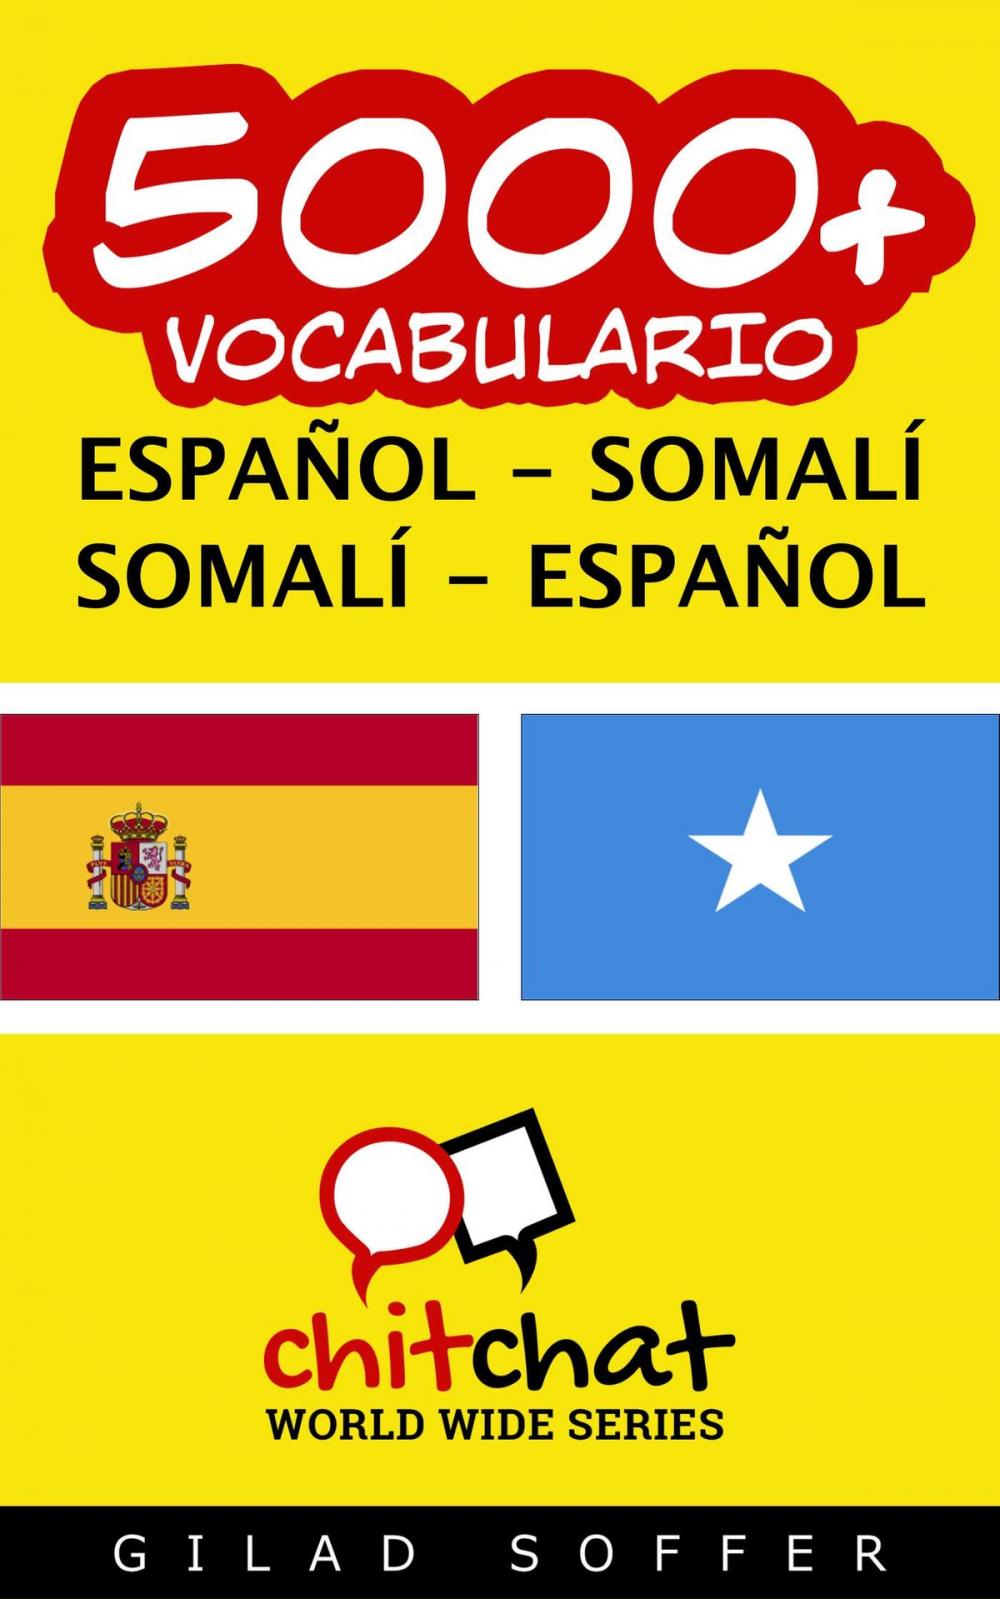 Big bigCover of 5000+ vocabulario español - somalí